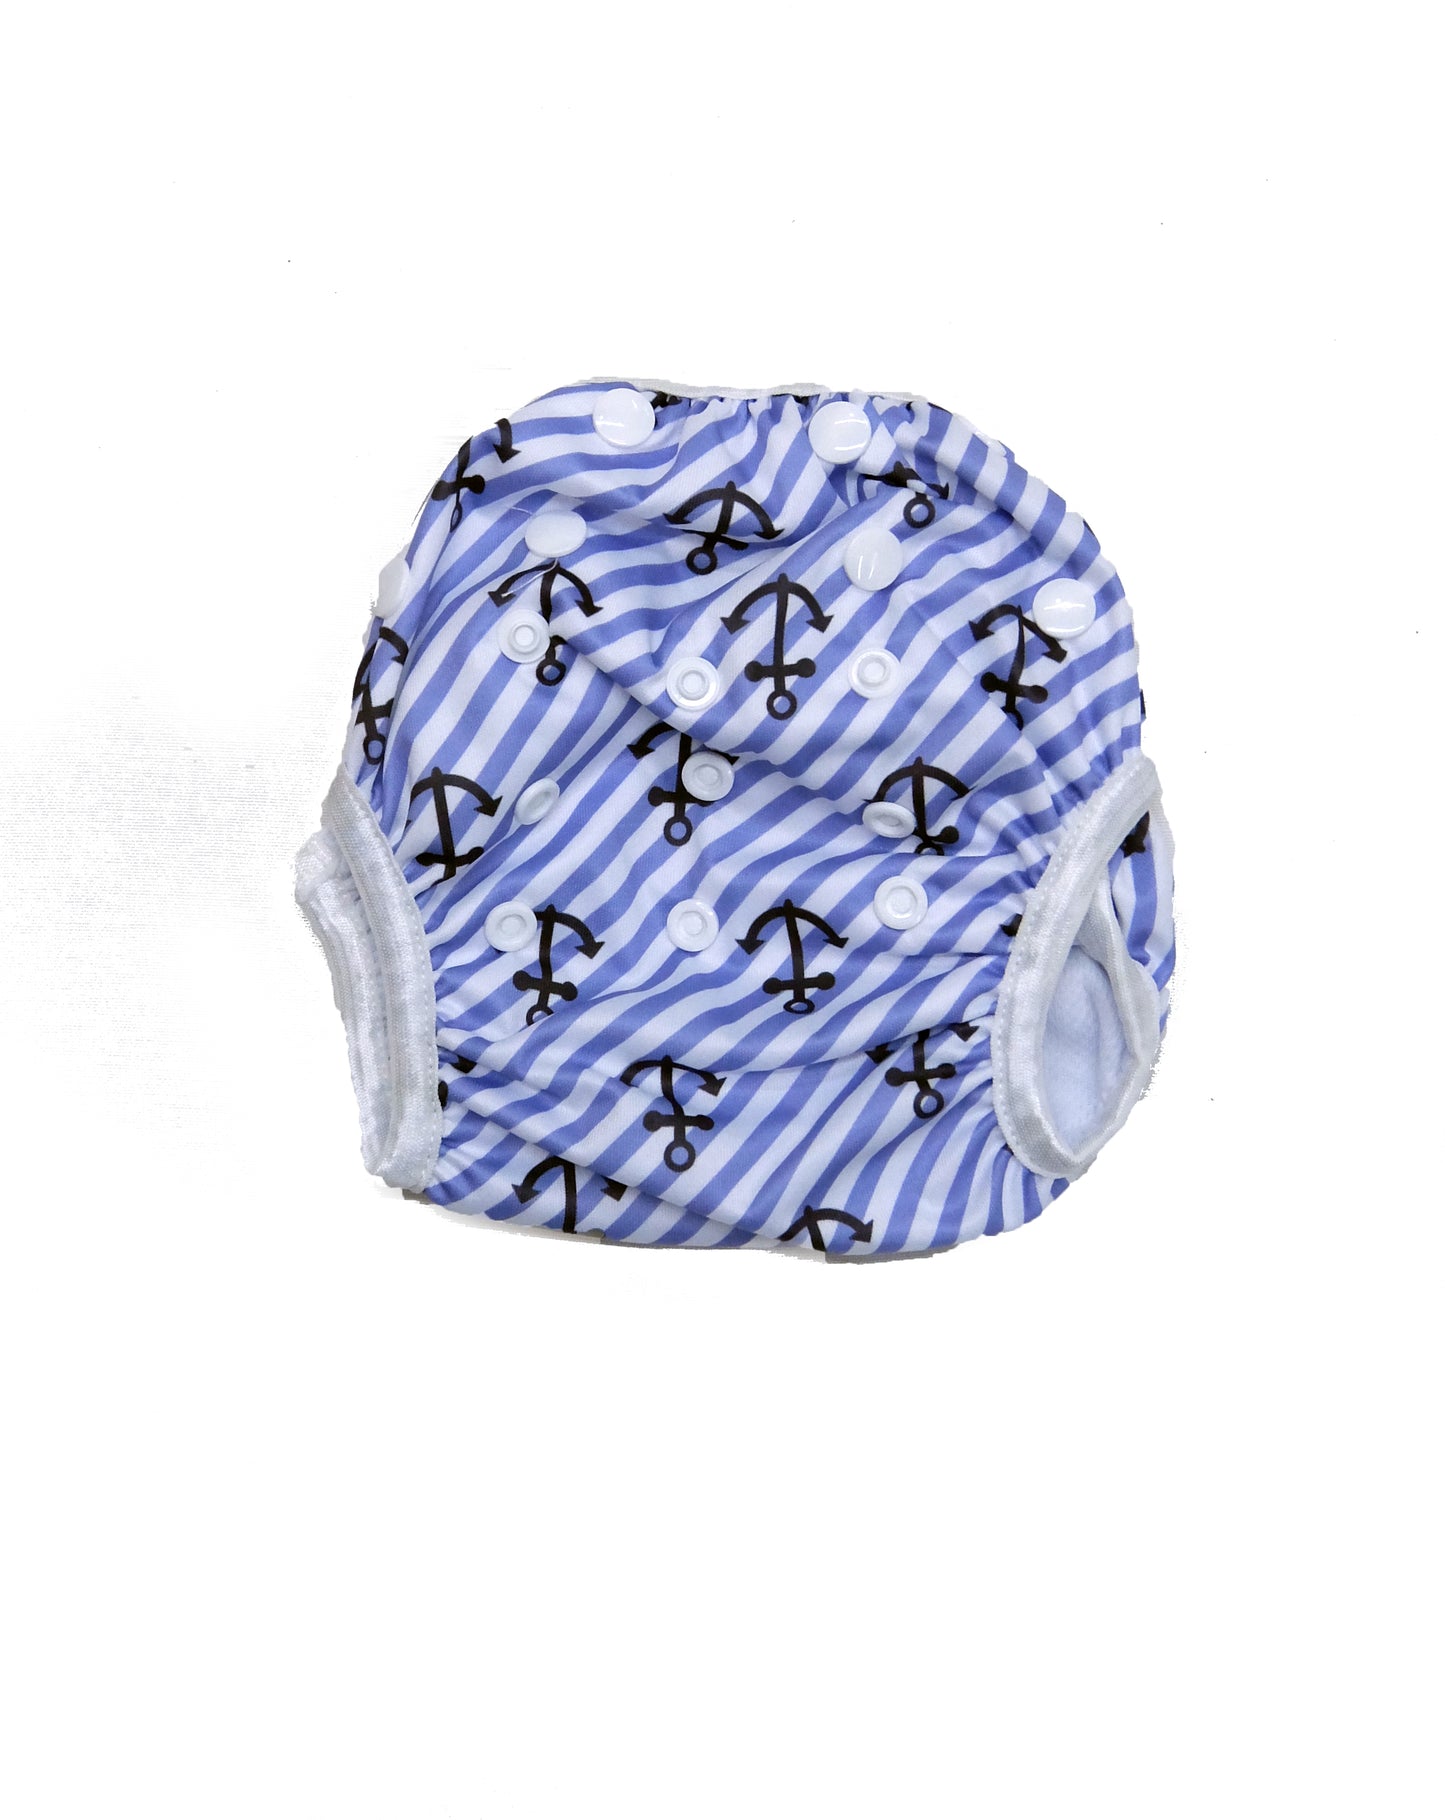 Next9 Swim Diapers Anchor Blue (assorted design)